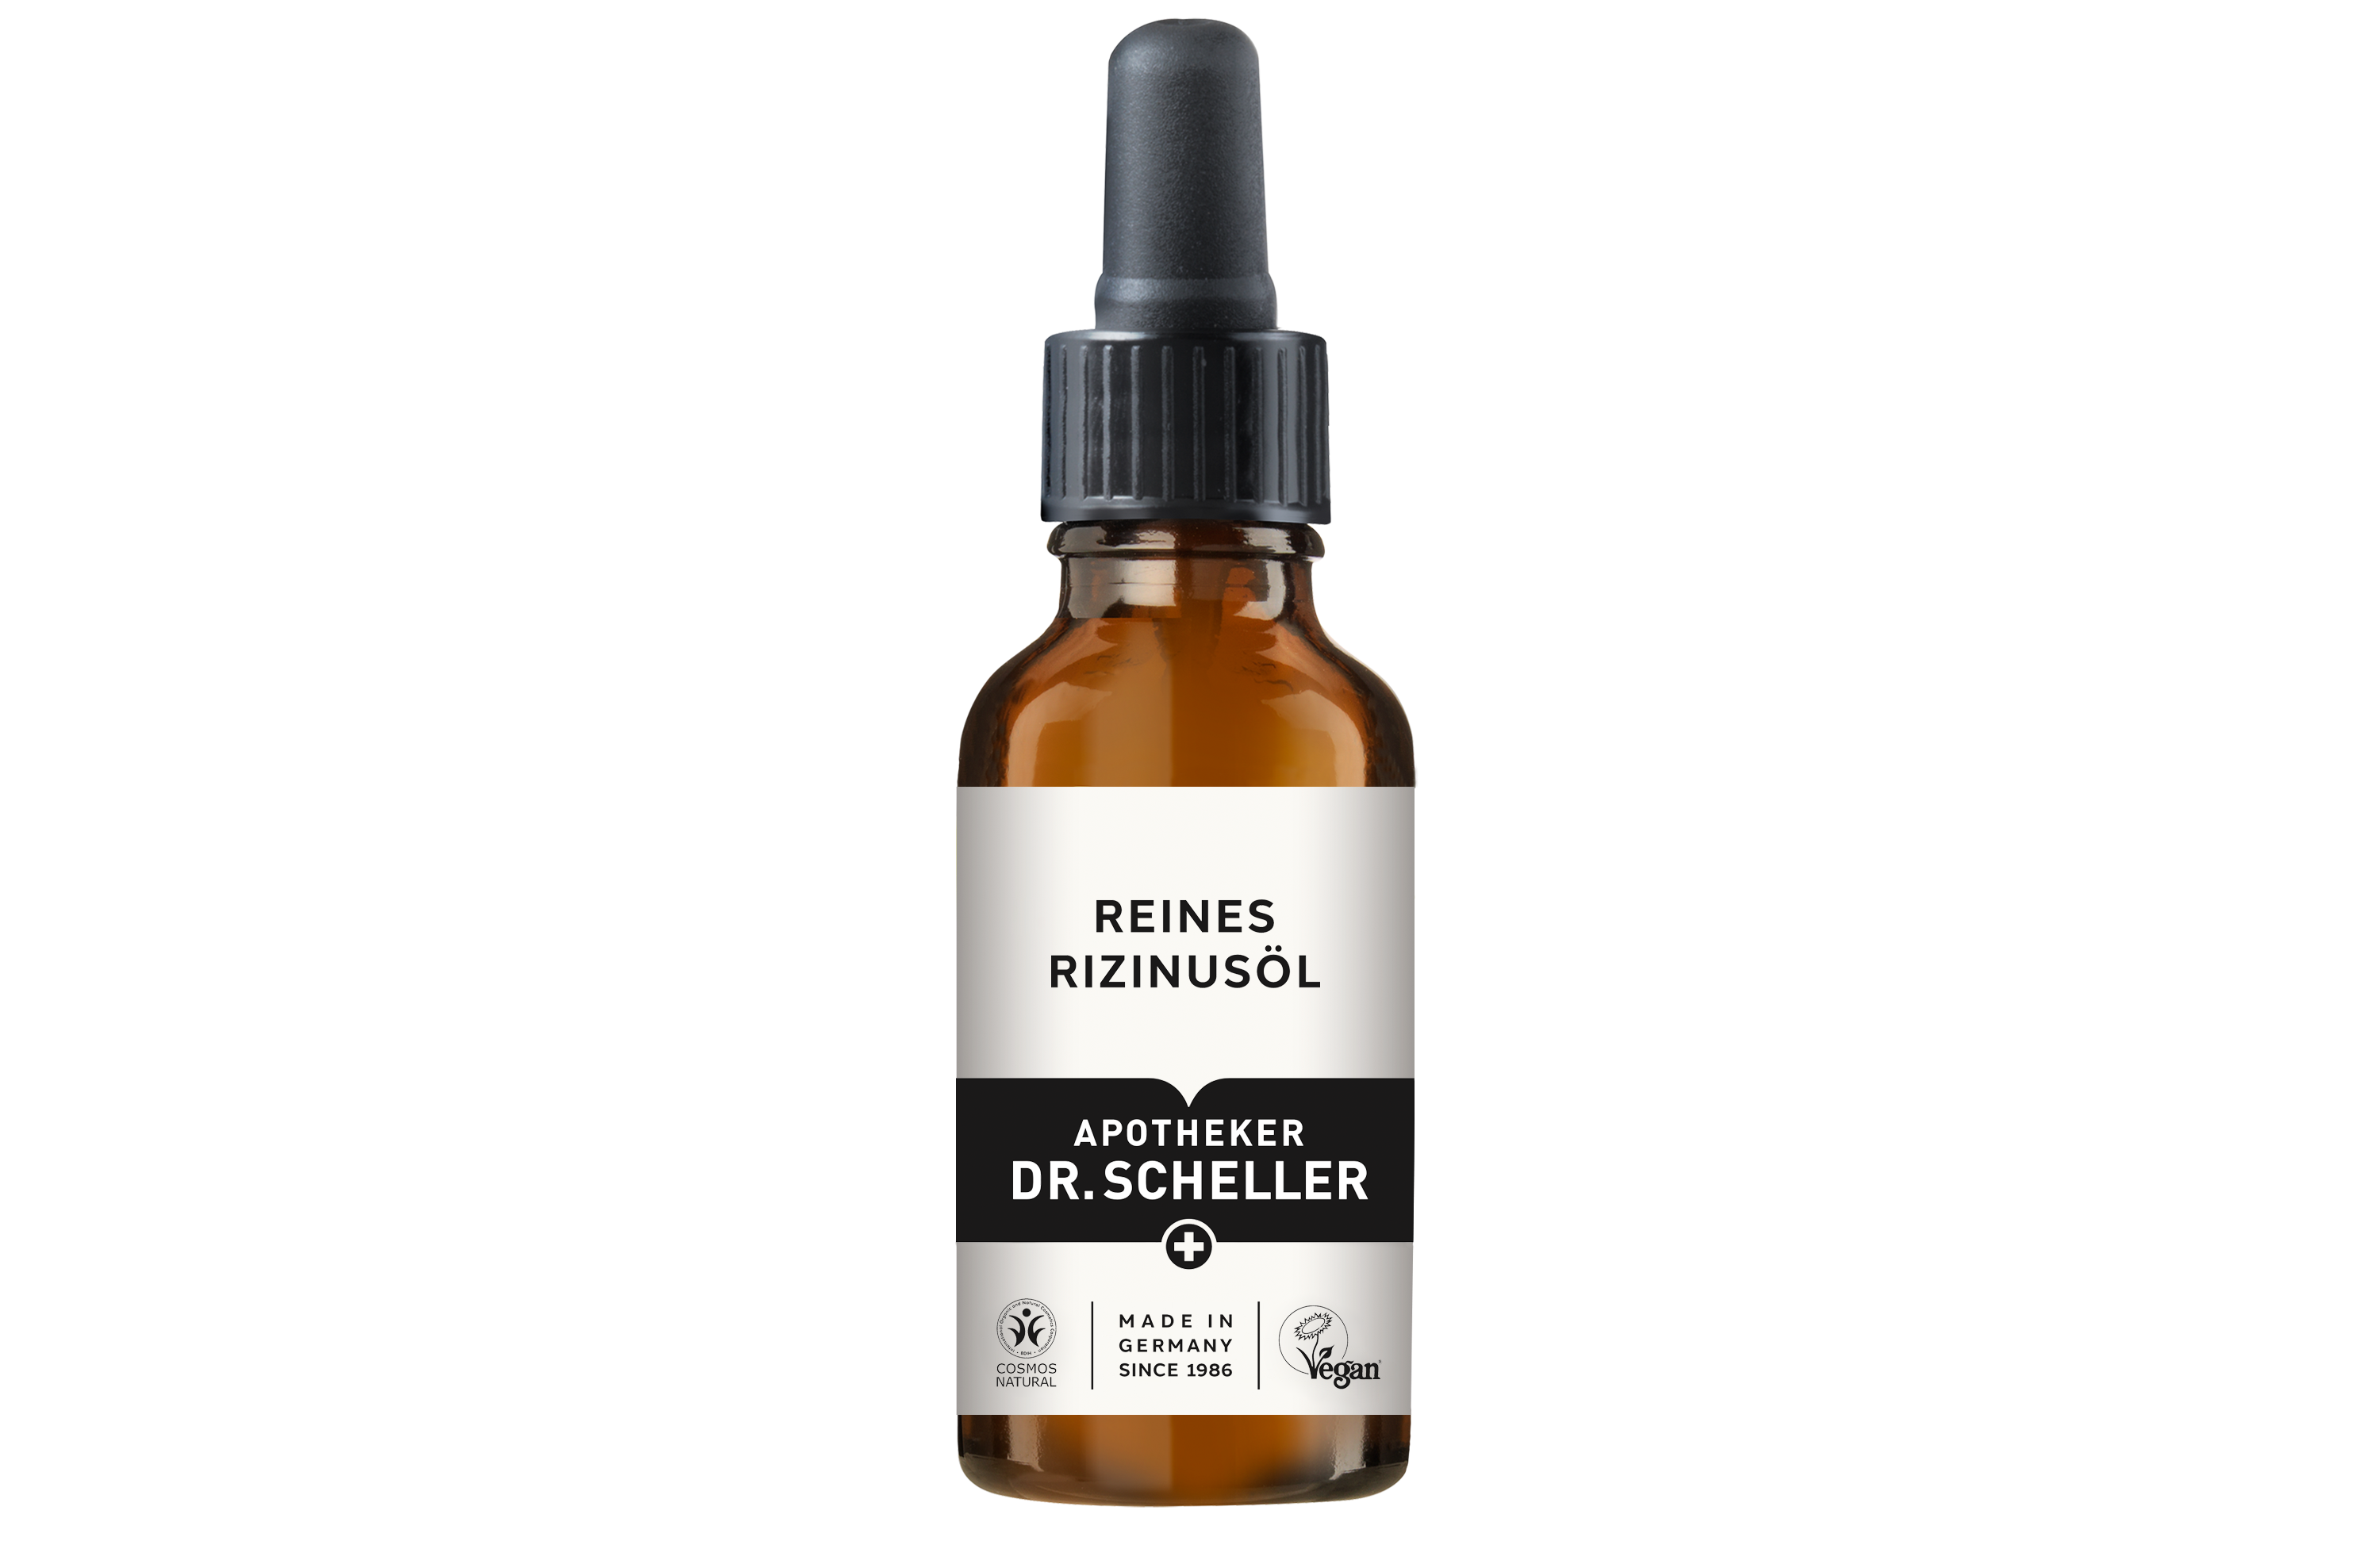 APOTHEKER DR SCHELLER_Reine Produkte_Reines Rizinusöl